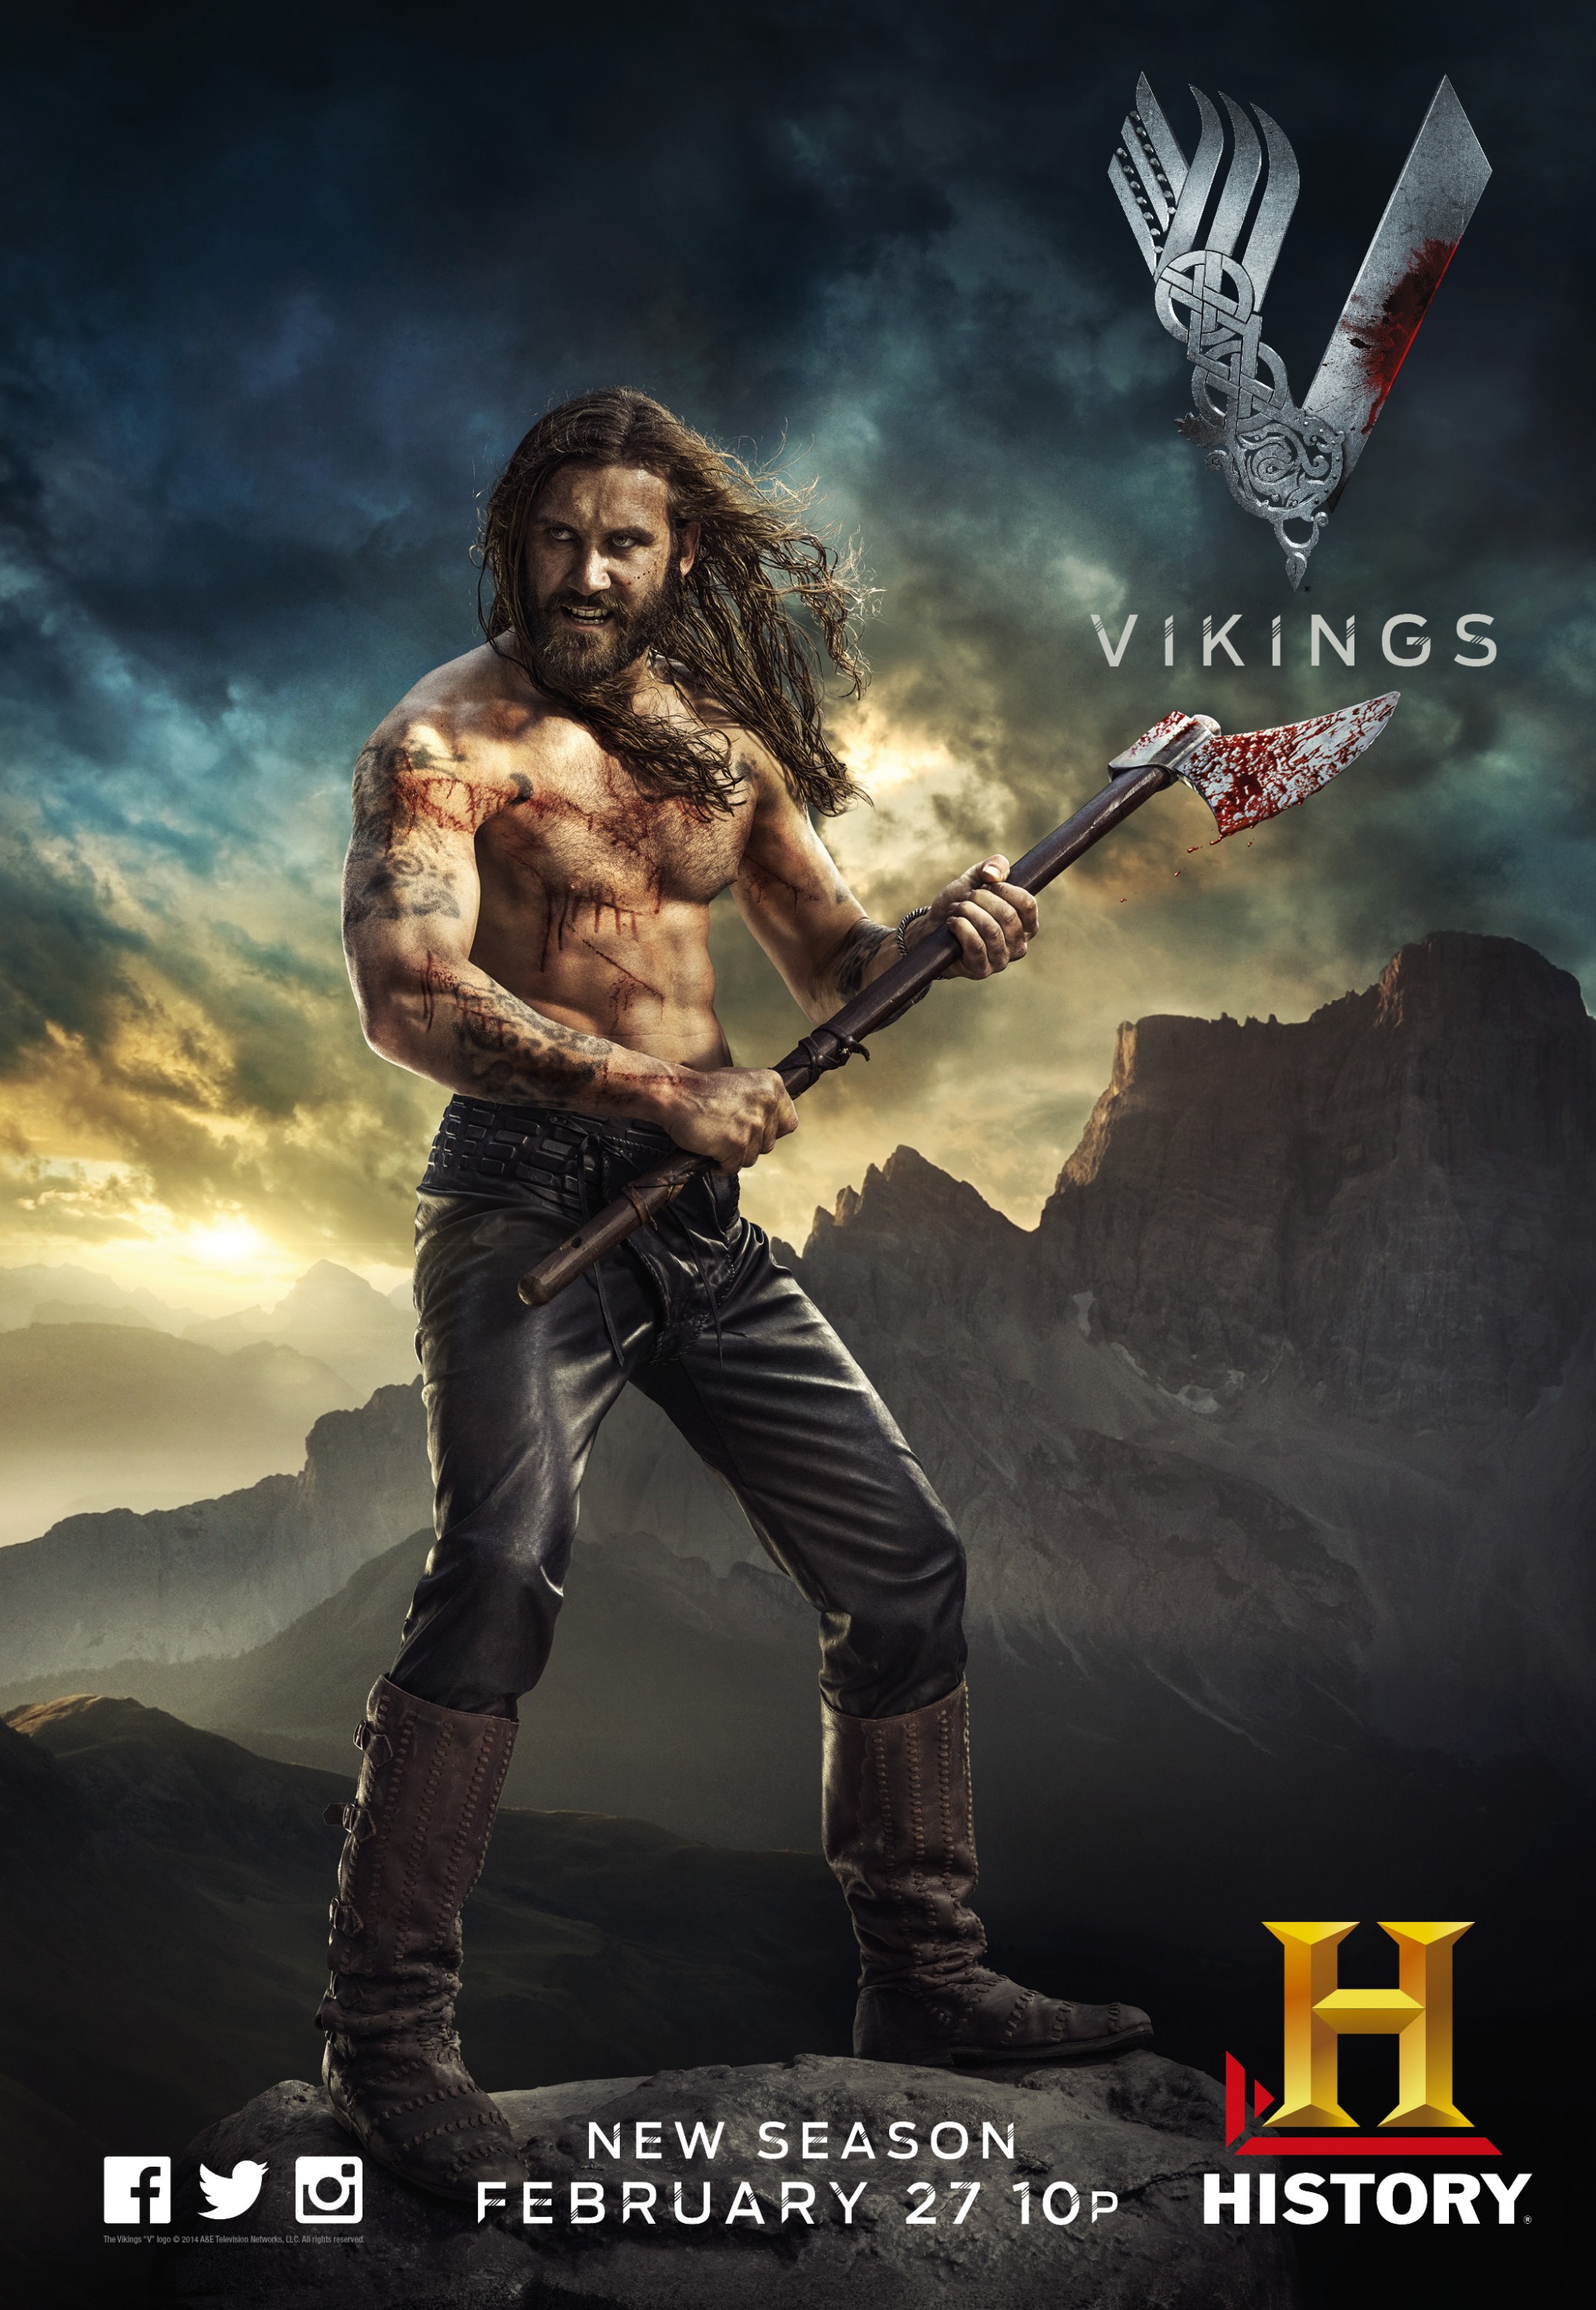 Mega Sized TV Poster Image for Vikings (#4 of 30)